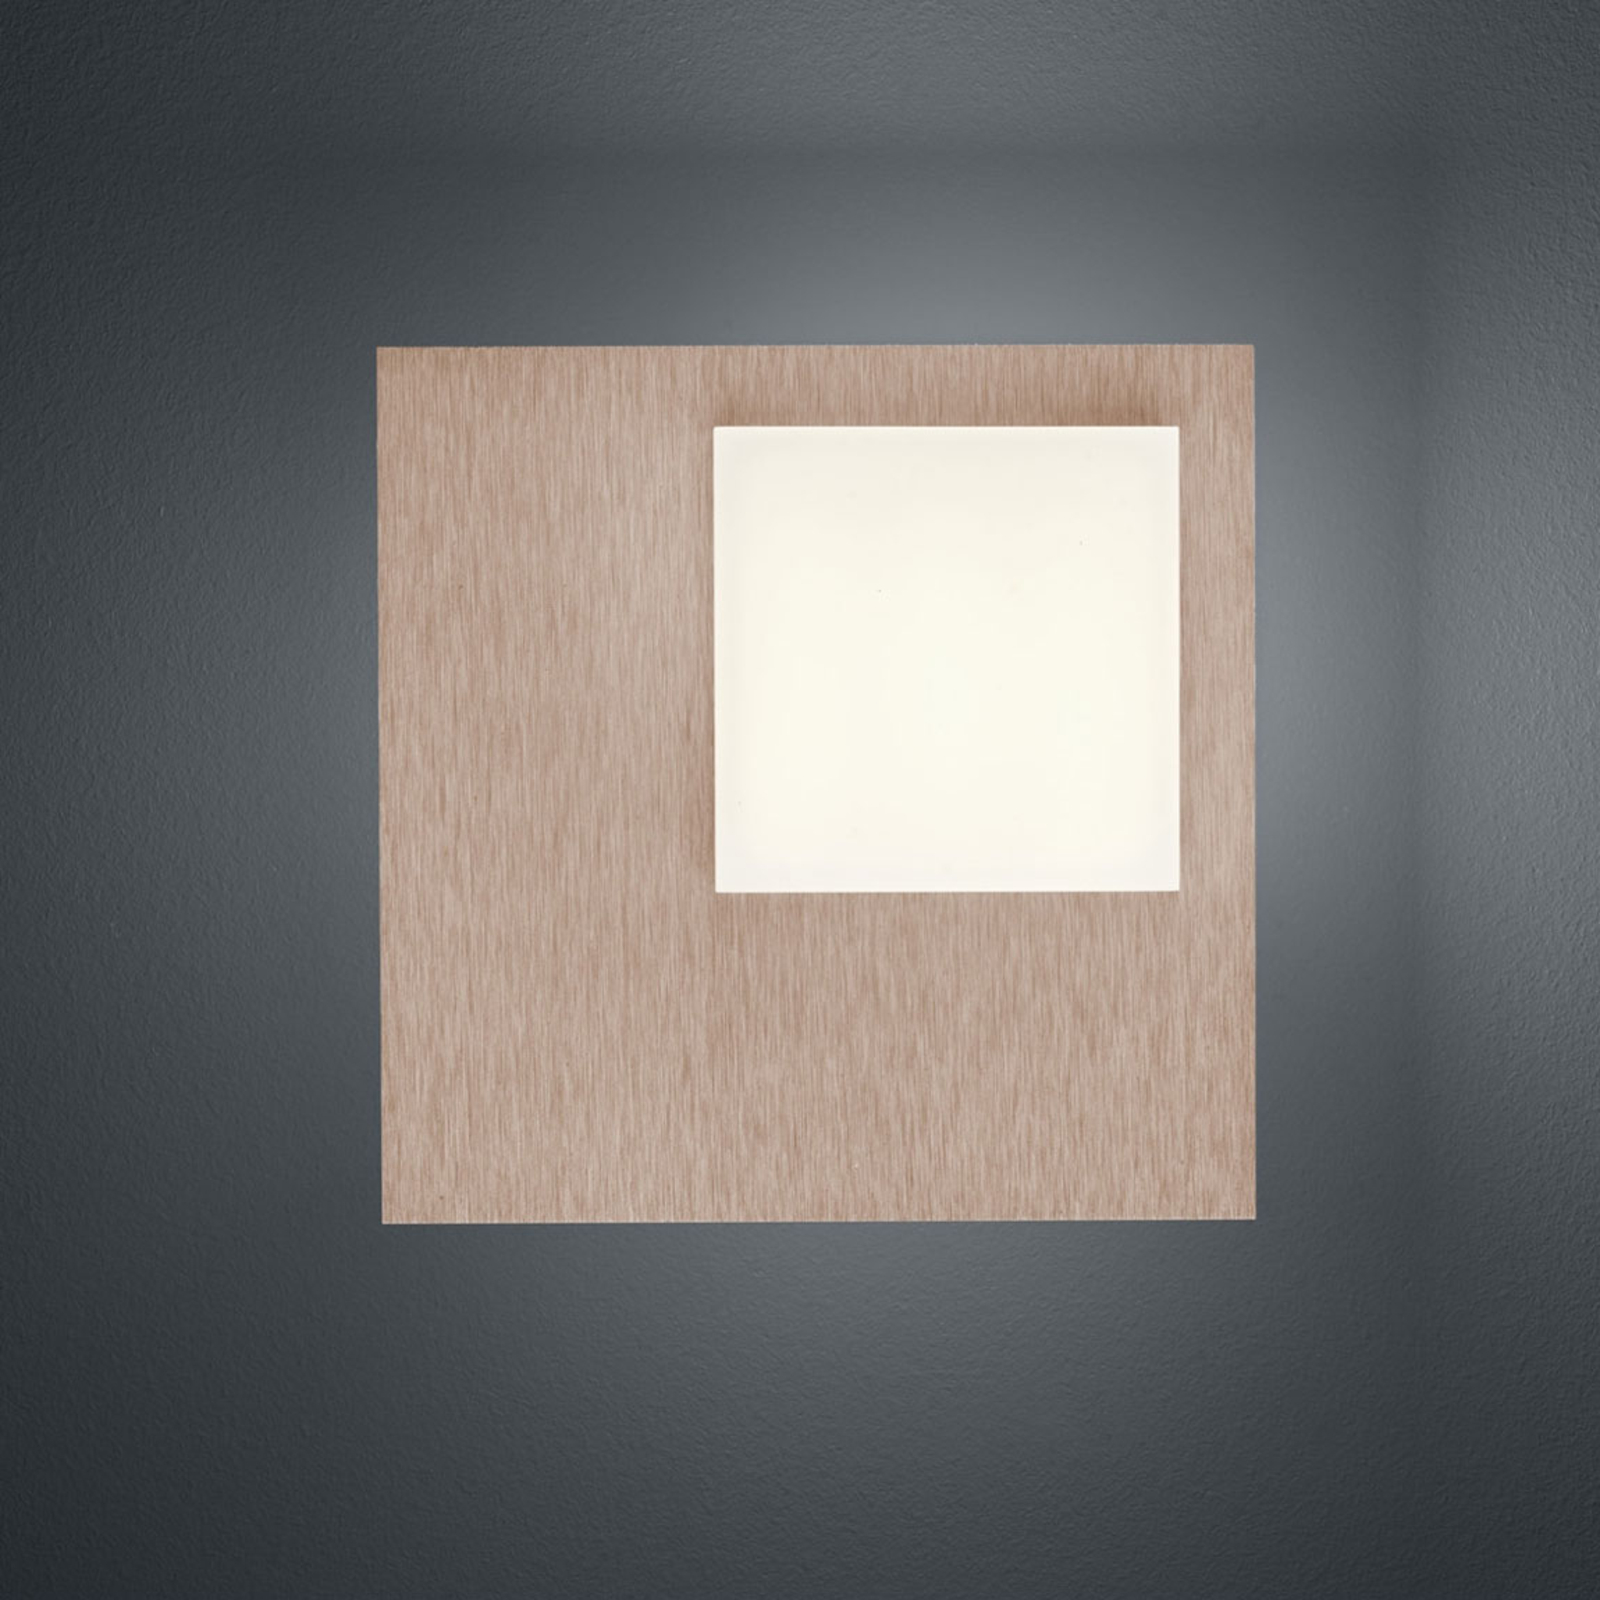 BANKAMP Cube LED ceiling light 8 W rose gold